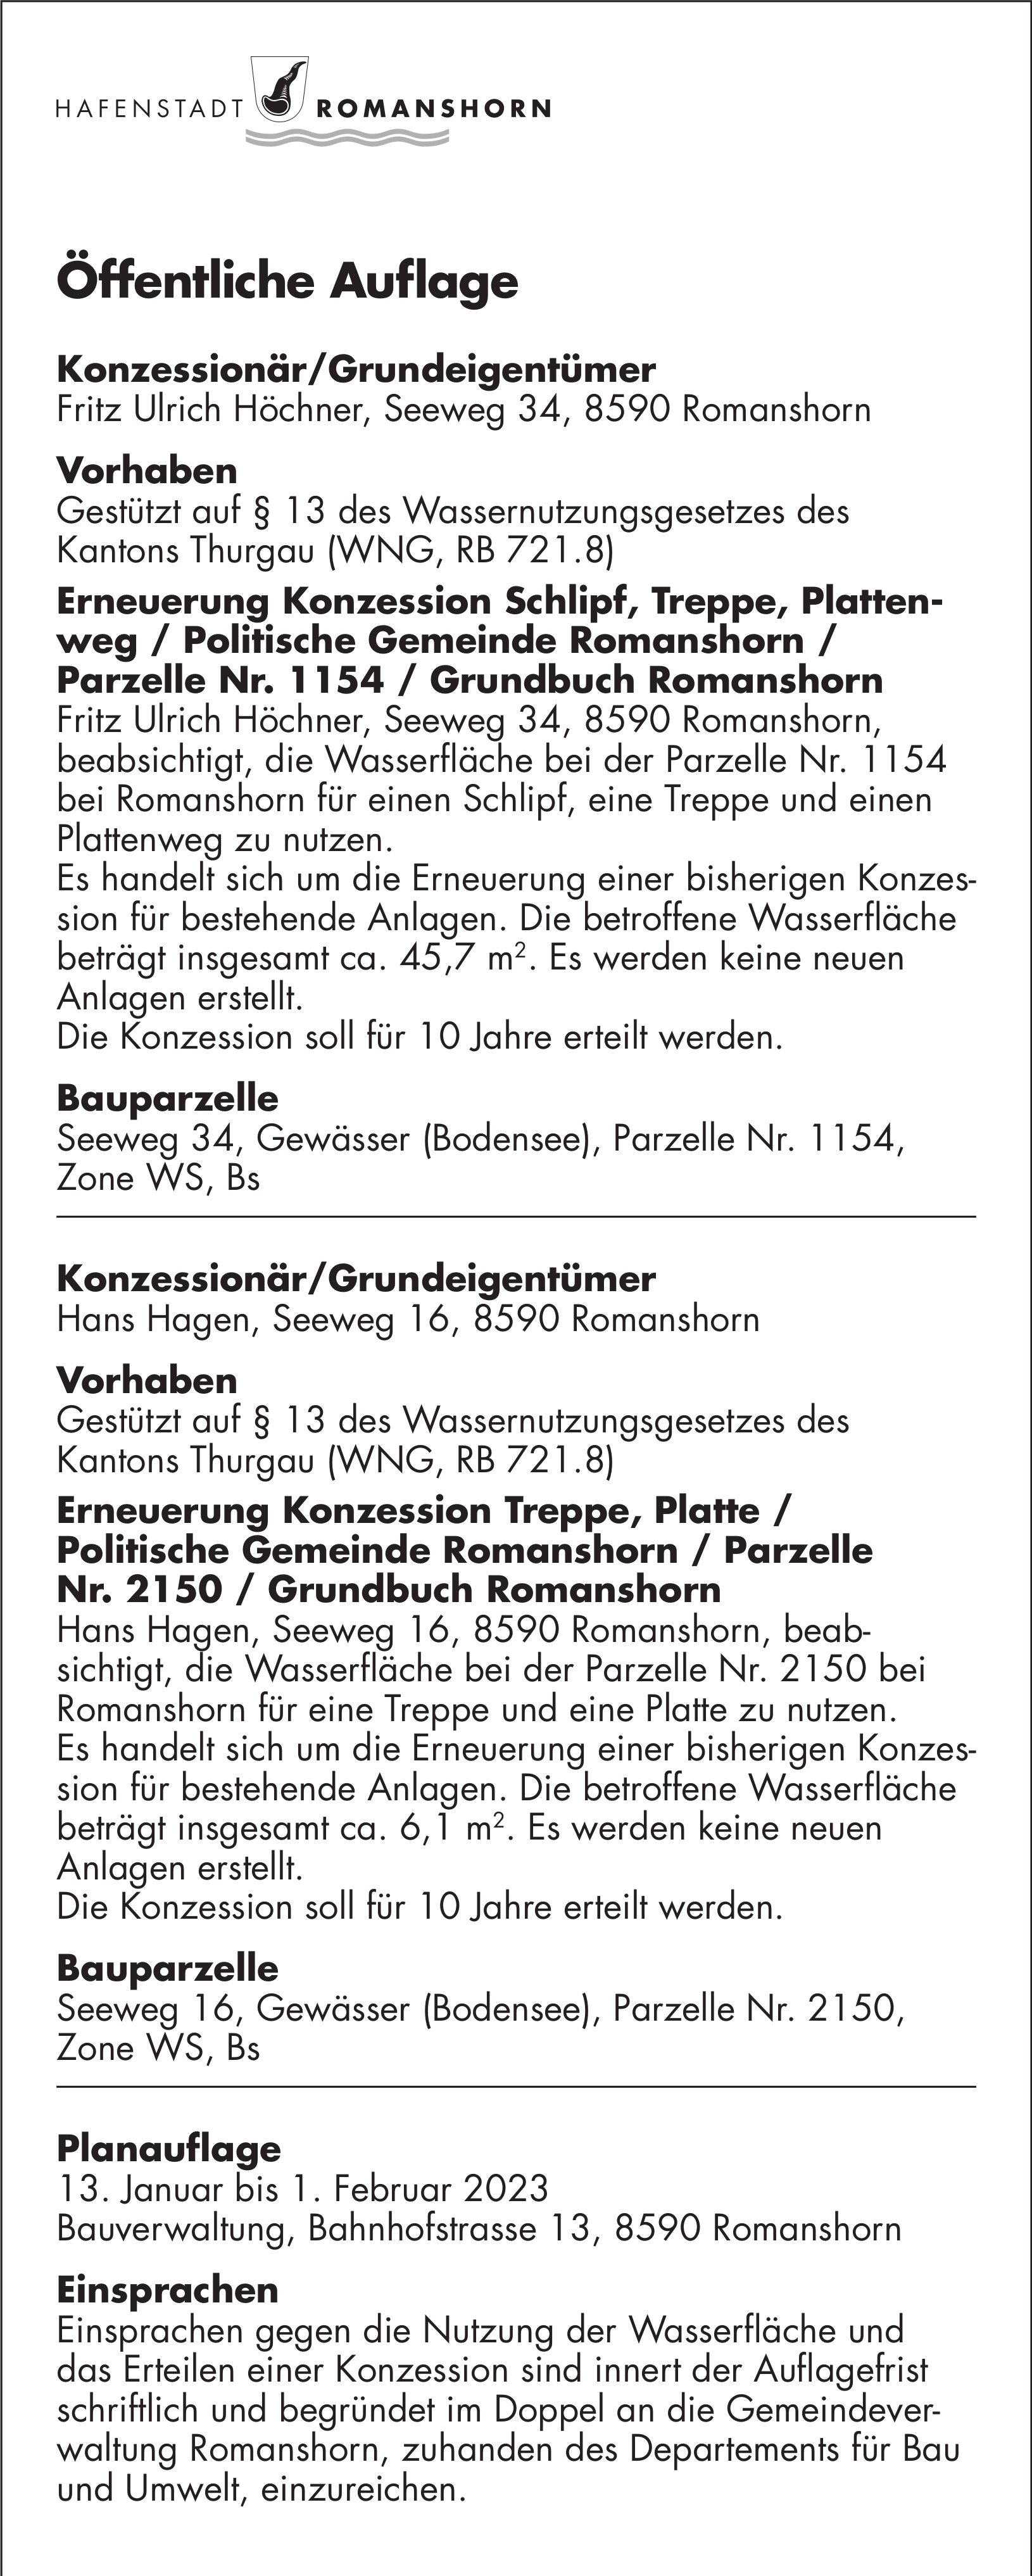 Hafenstadt Romanshorn, Öffentliche Auflage vom 13. Januar 2023